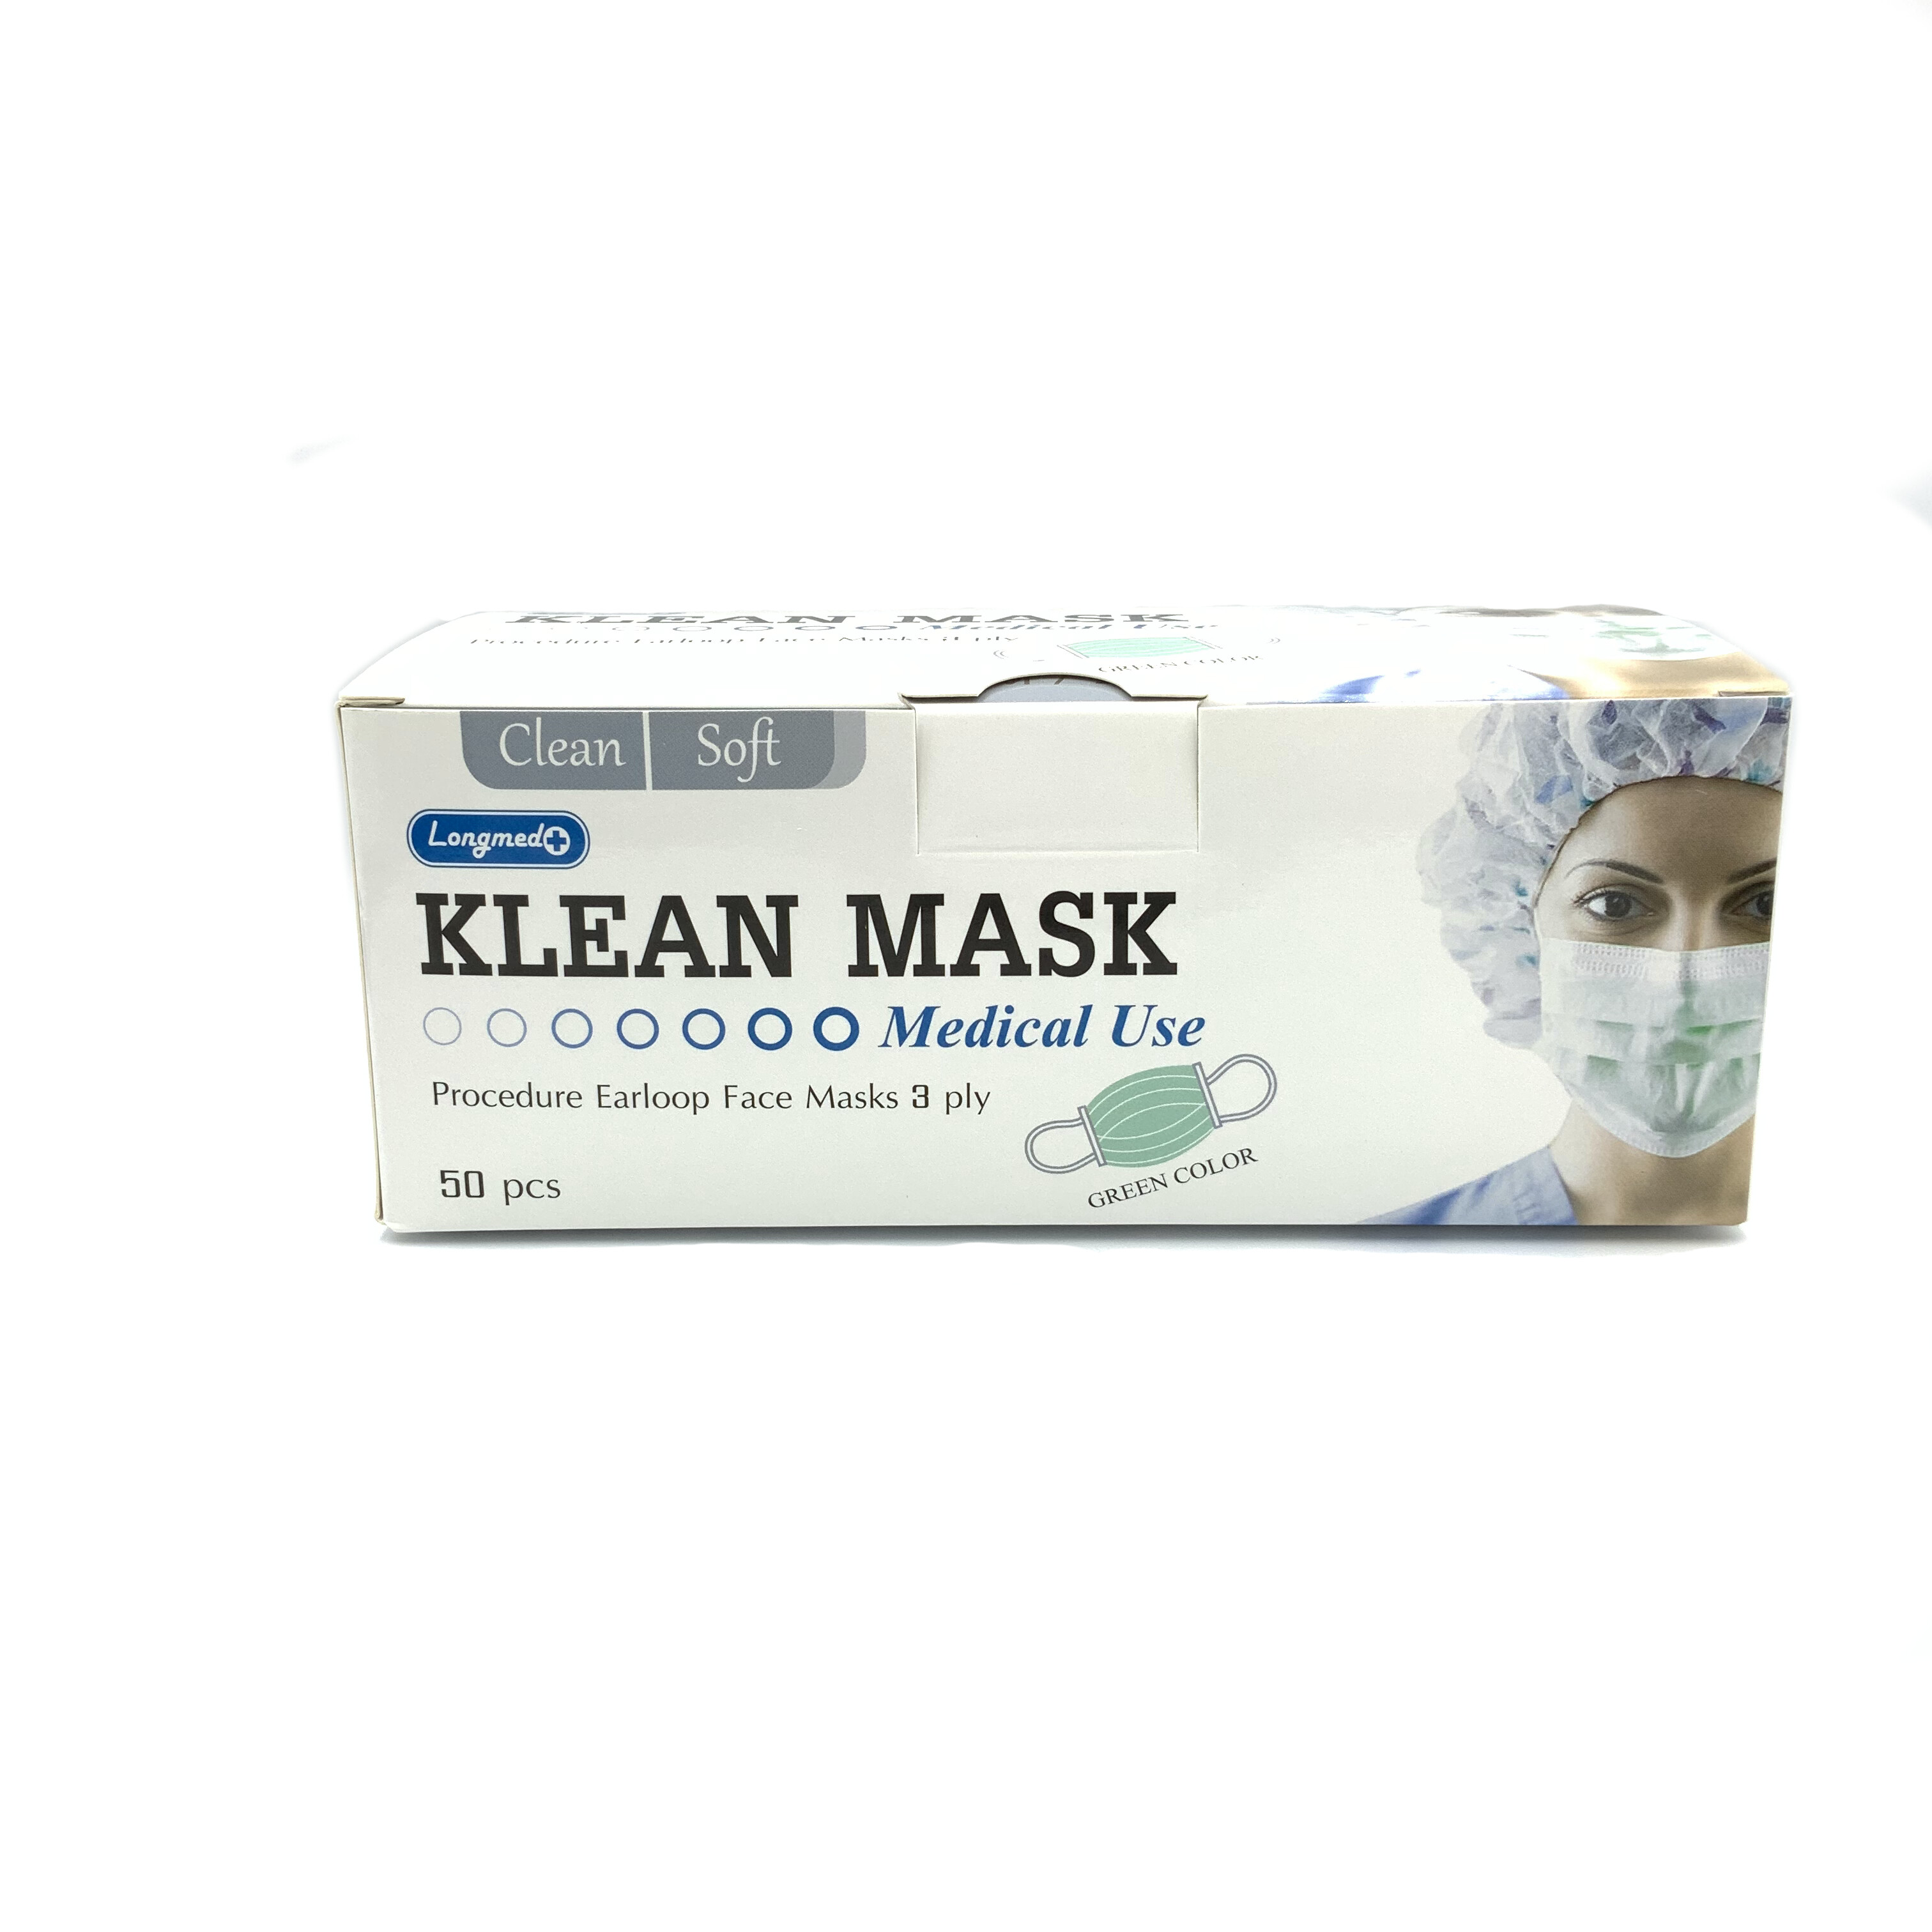 เกี่ยวกับ [ 2 กล่อง ]หน้ากากอนามัยทางการแพทย์ หน้ากากอนามัย Klean mask (Longmed) แมสทางการแพทย์ 2 กล่อง